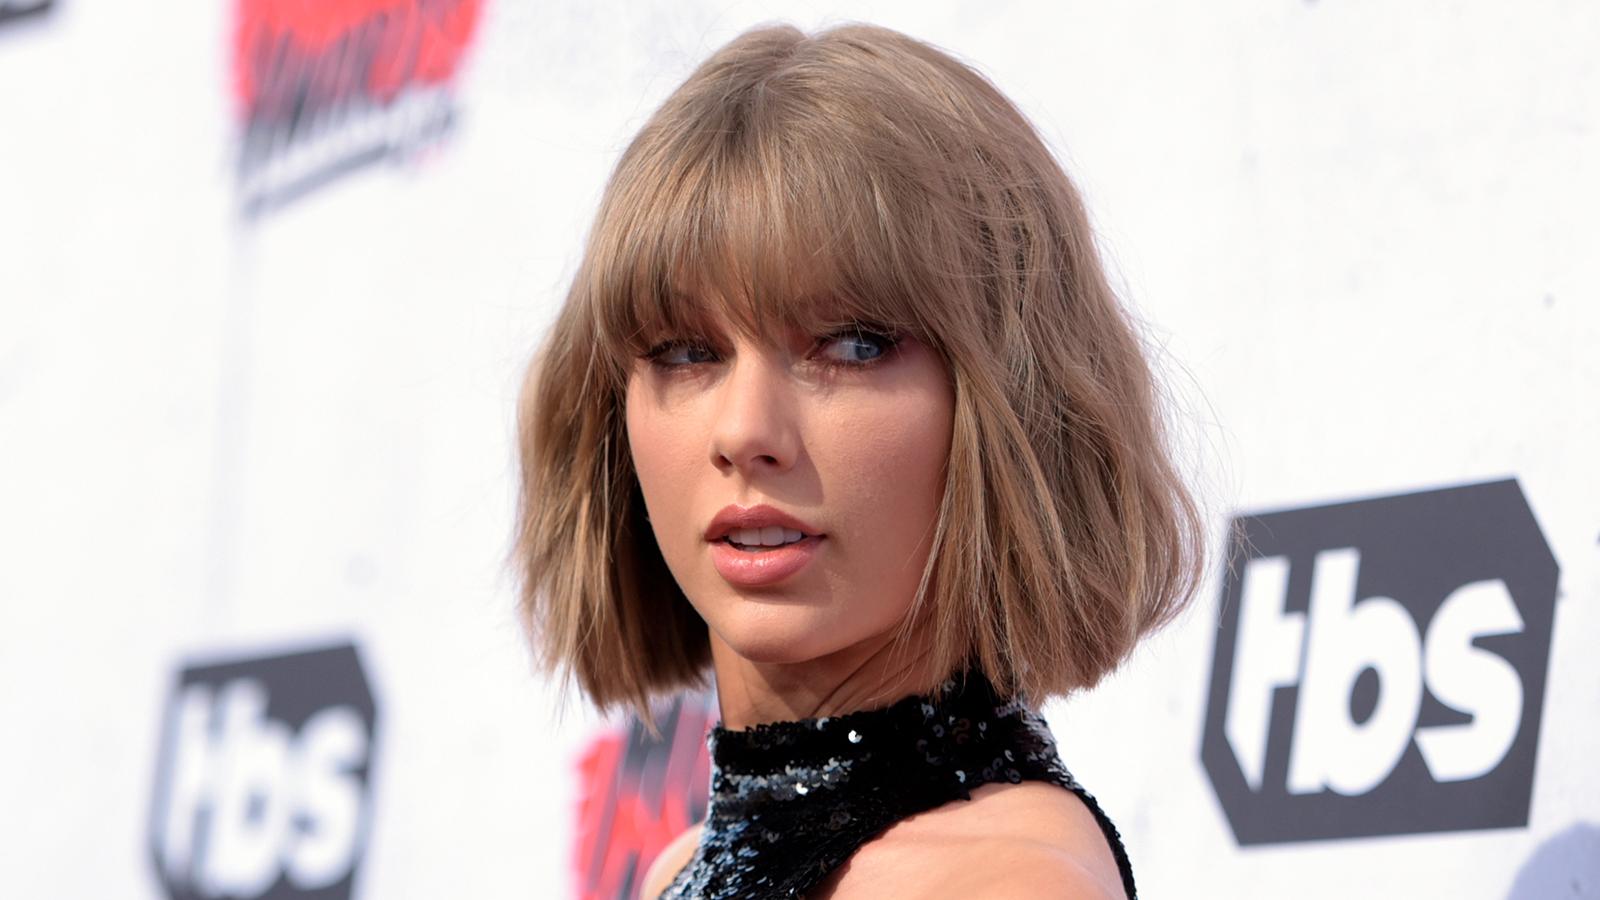 Gång på gång under vittnesmålet berättade Taylor Swift om hur en radiopratare tafsat henne under kjolen.